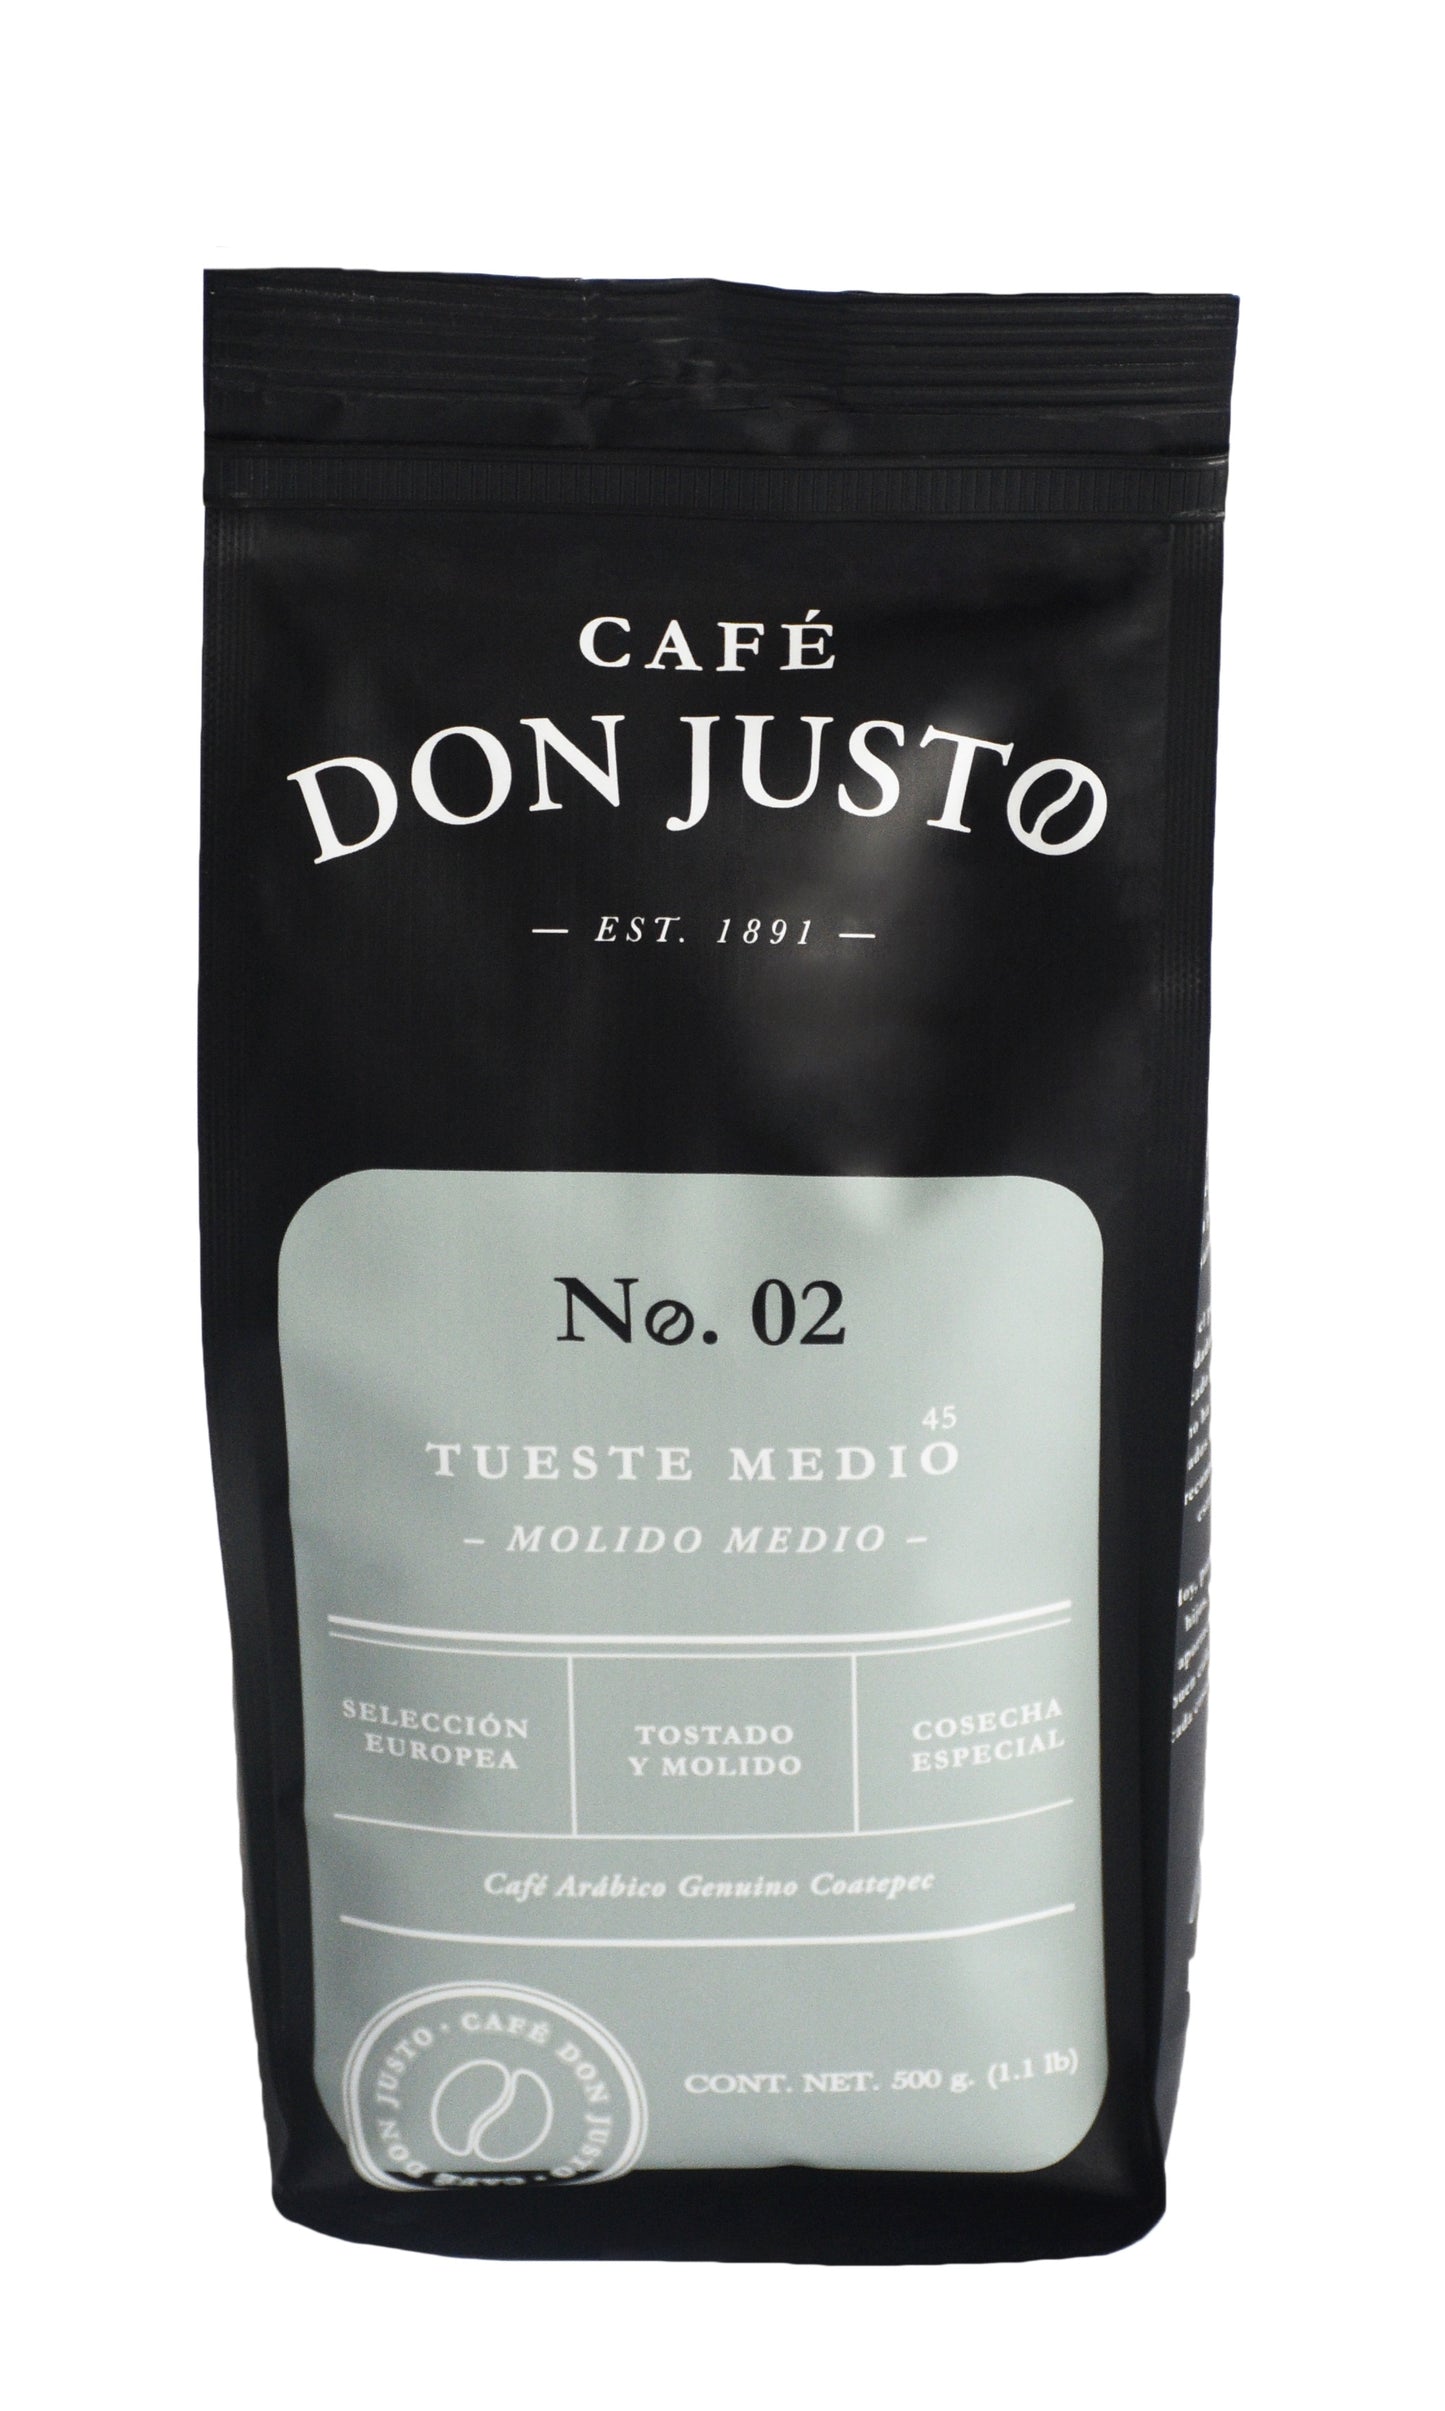 Café Don Justo No. 02 - Paquete de 3 Bolsas - Tueste Medio Oscuro